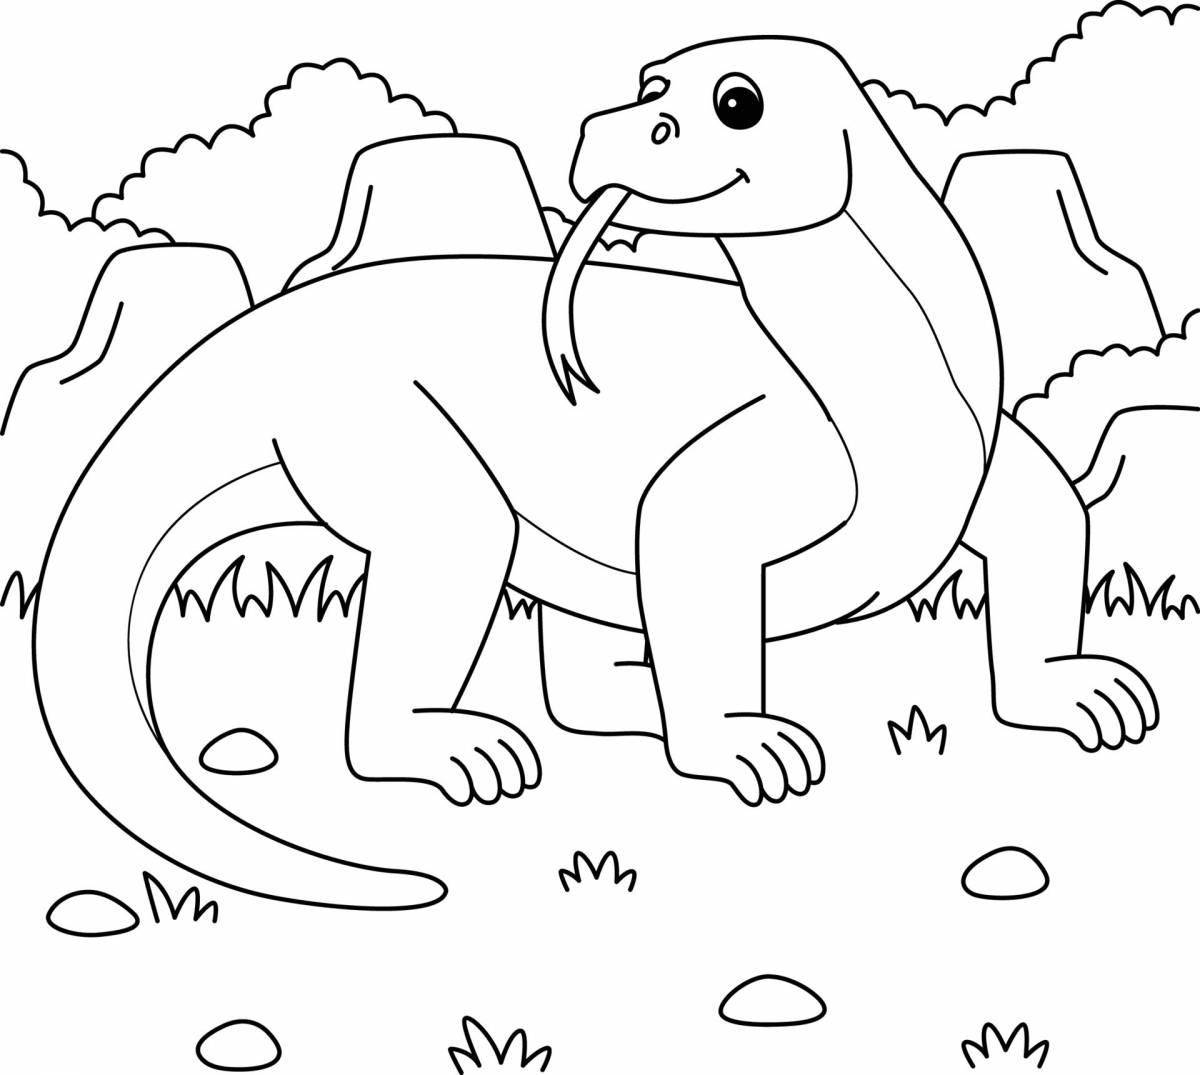 Komodo dragon coloring page